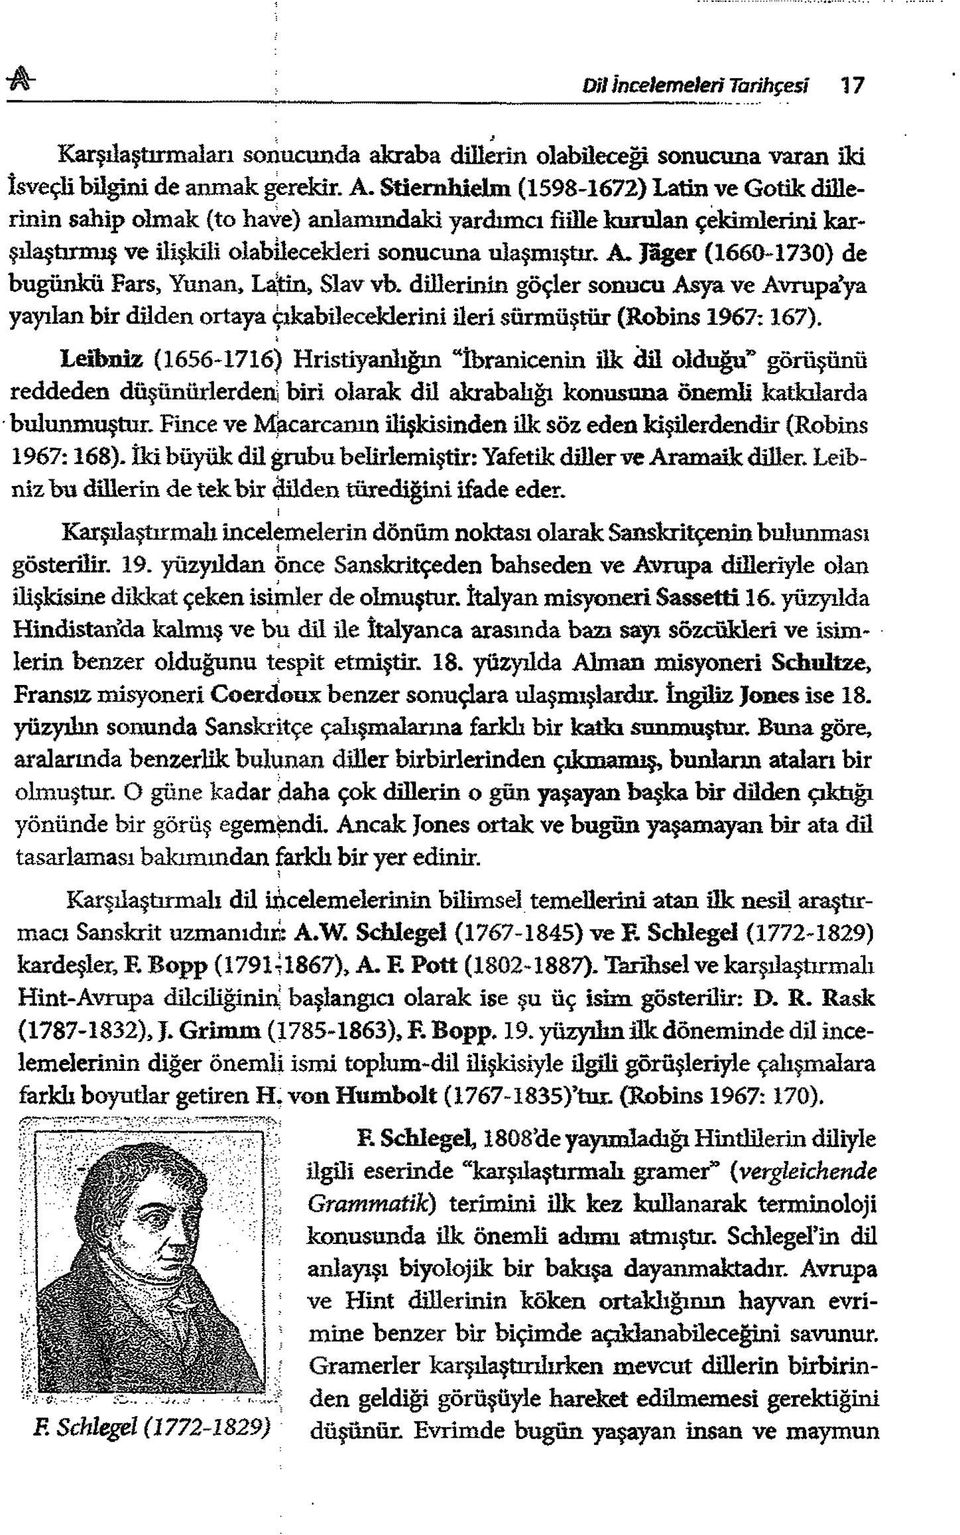 Jager (1660-1730) de bugünkü Fars, Yunan, Lâtin, Slav vb. dillerinin göçler sonucu Asya ve Avrupa ya yayılan bir dilden ortaya çıkabileceklerim ileri sürm üştür (Röbins 1967:167).